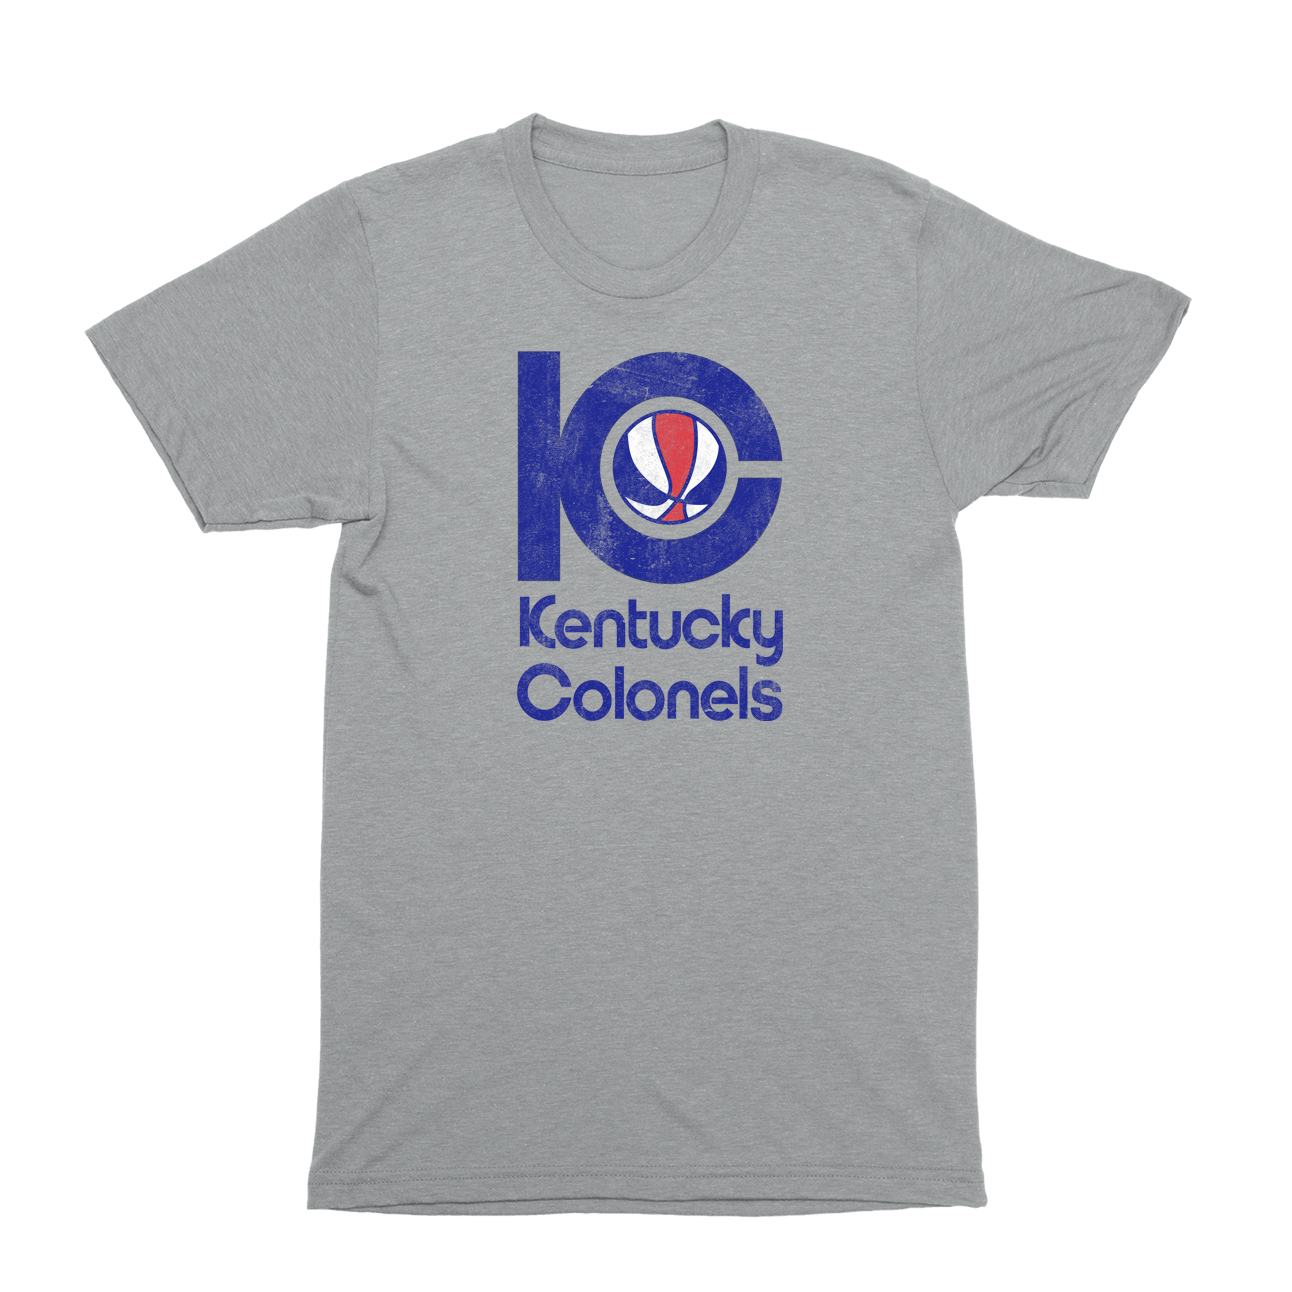 Kentucky Colonels T-Shirt